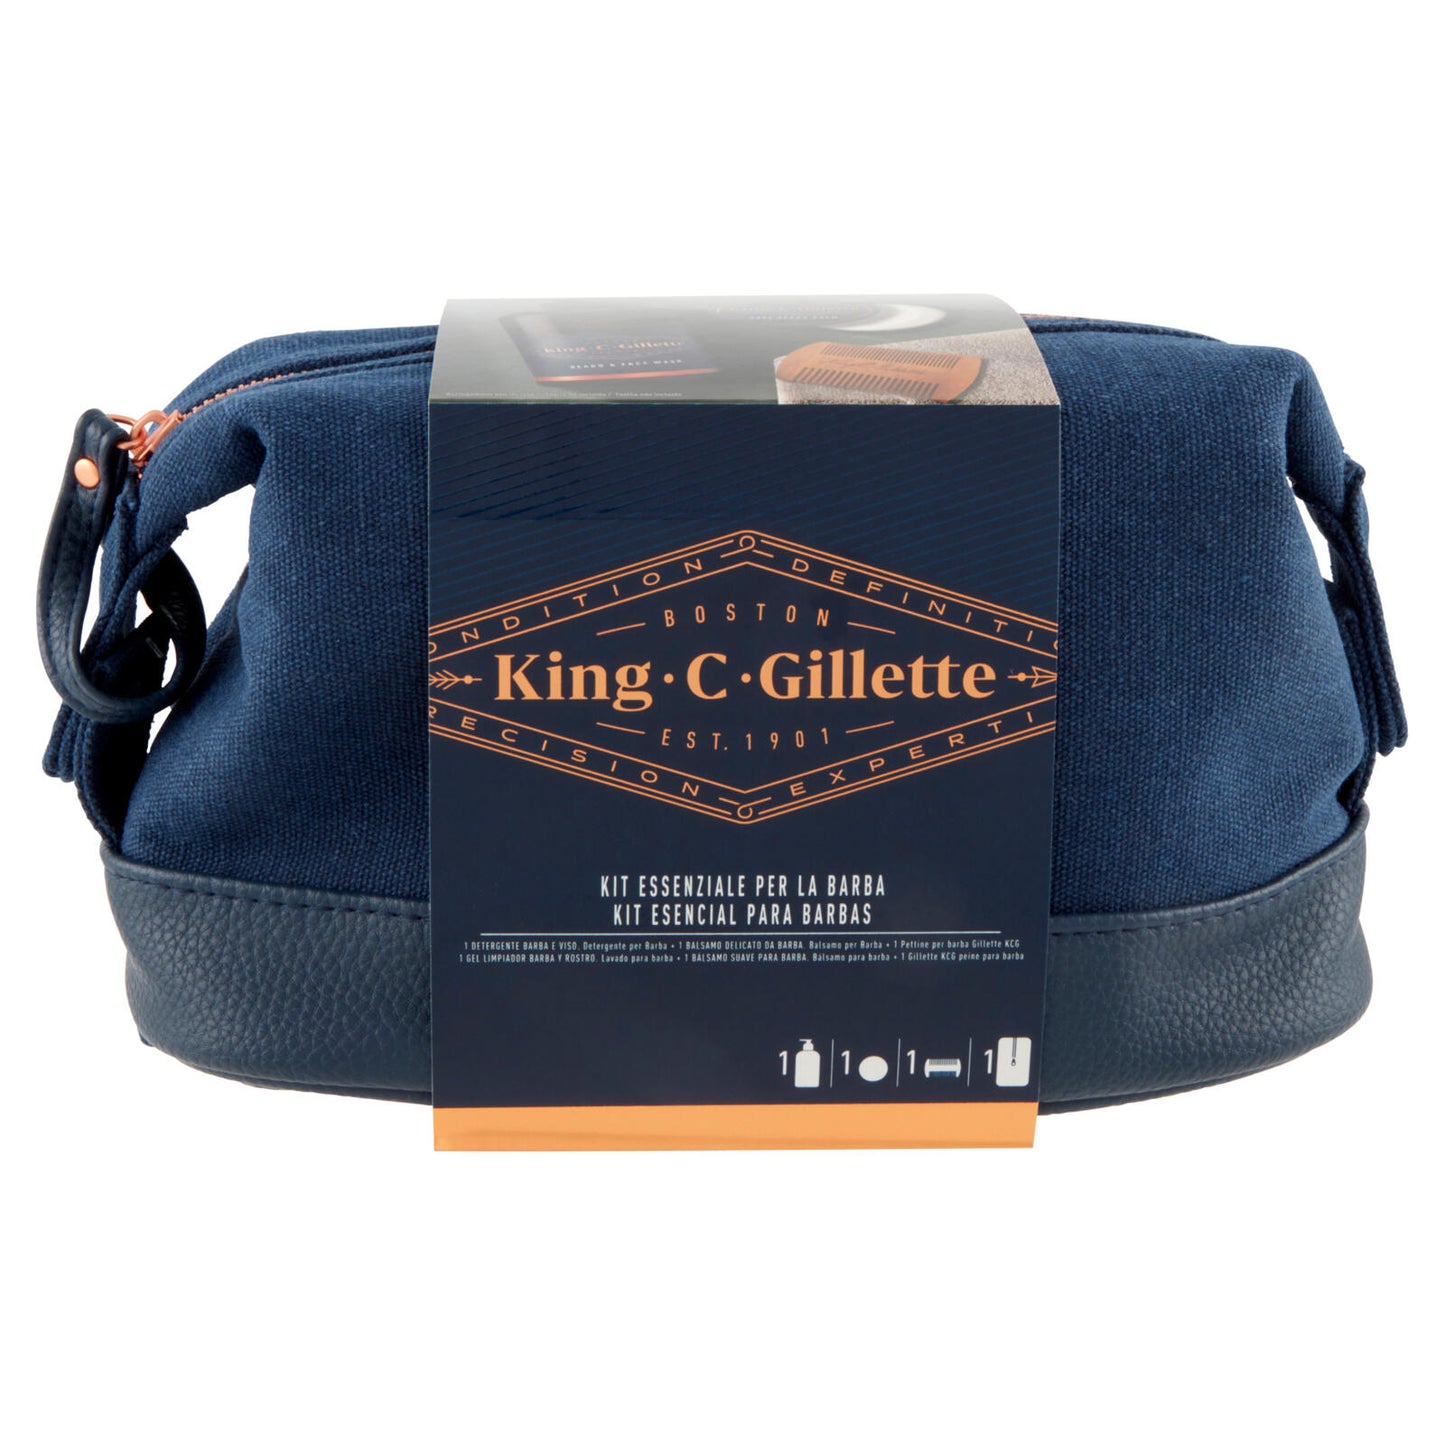 King C. Gillette Astuccio Regalo Cura Barba: Detergente 350 ml+Balsamo Delicato 100 ml+Pettine Barba